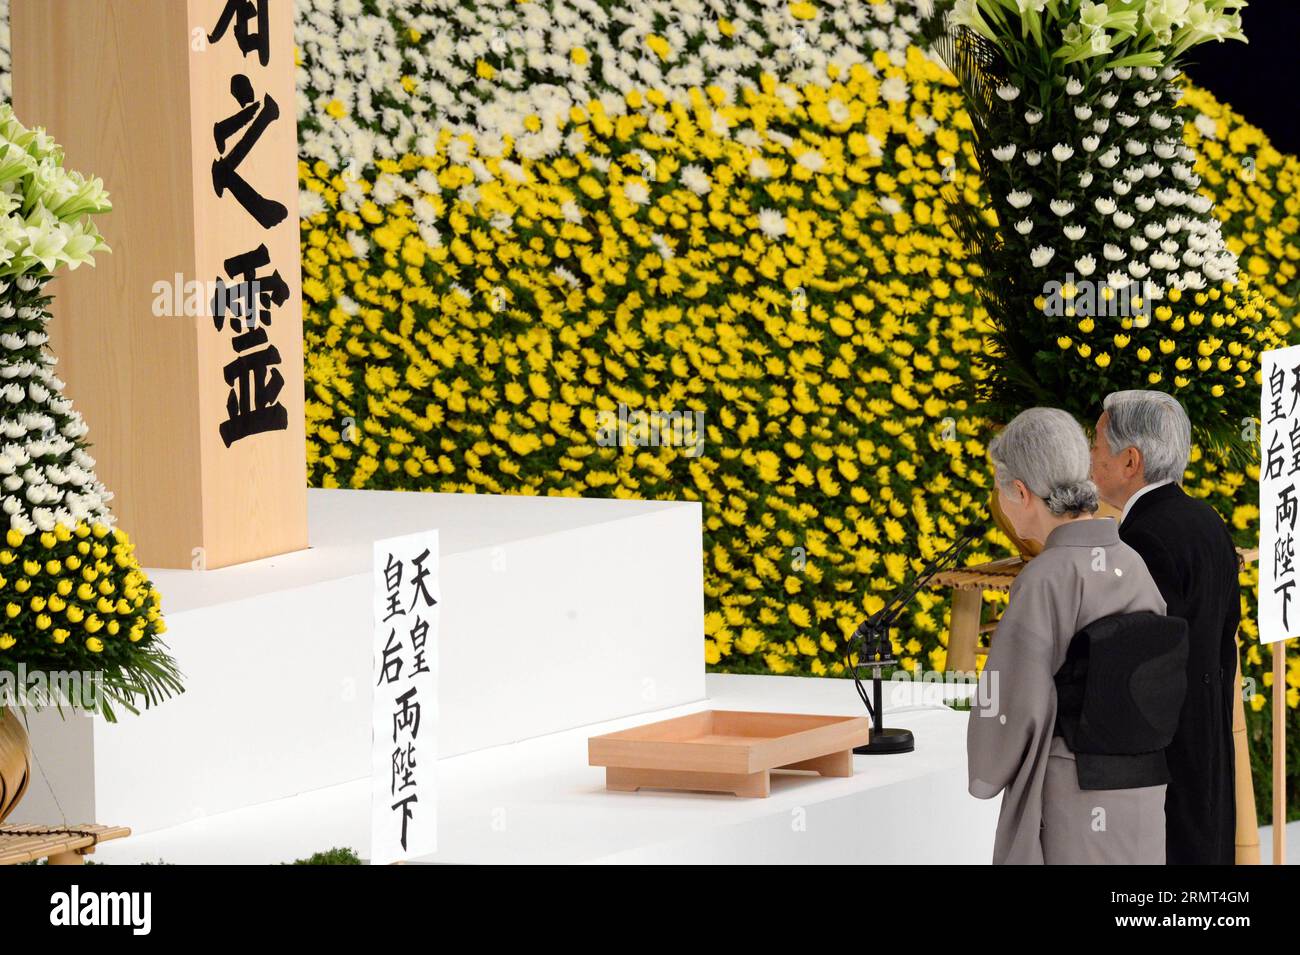 (140815) -- TOKYO, -- l'imperatore giapponese Akihito e l'imperatrice Michiko offrono una preghiera silenziosa durante un servizio commemorativo annuale per i morti di guerra del Giappone a Tokyo il 15 agosto 2014, nel 69° anniversario della resa del Giappone nella seconda guerra mondiale.) JAPAN-TOKYO-WWII-SURRENDER-69TH ANNIVERSARY MaxPing PUBLICATIONxNOTxINxCHN Tokyo Japanese Emperor Akihito e Empress Michiko OFFRONO una preghiera silenziosa durante il servizio commemorativo annuale per il Giappone è morto a Tokyo IL 15 agosto 2014 IL 69 ° anniversario della resa del Giappone nel mondo è stato II Giappone Tokyo WWII Surrender 69th Anniversary PUBLICATIONxNOTxINXCHN Foto Stock